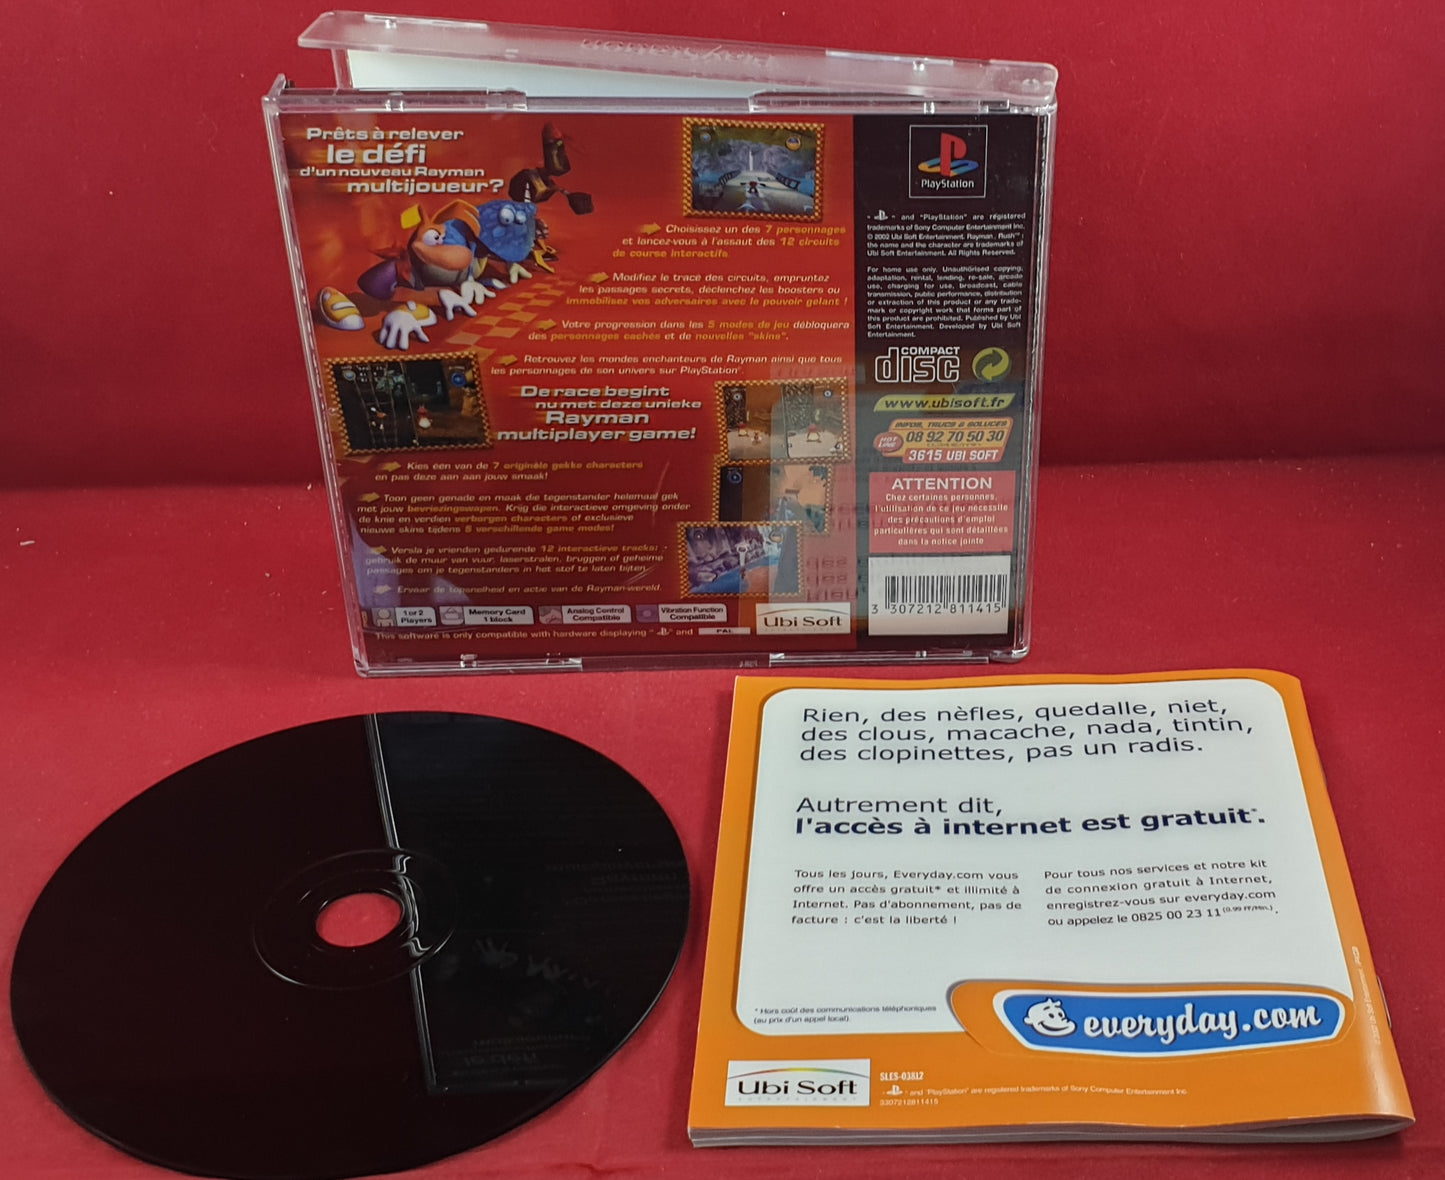 Rayman Rush Sony Playstation 1 (PS1) Game (Non English Manual & Inlay)